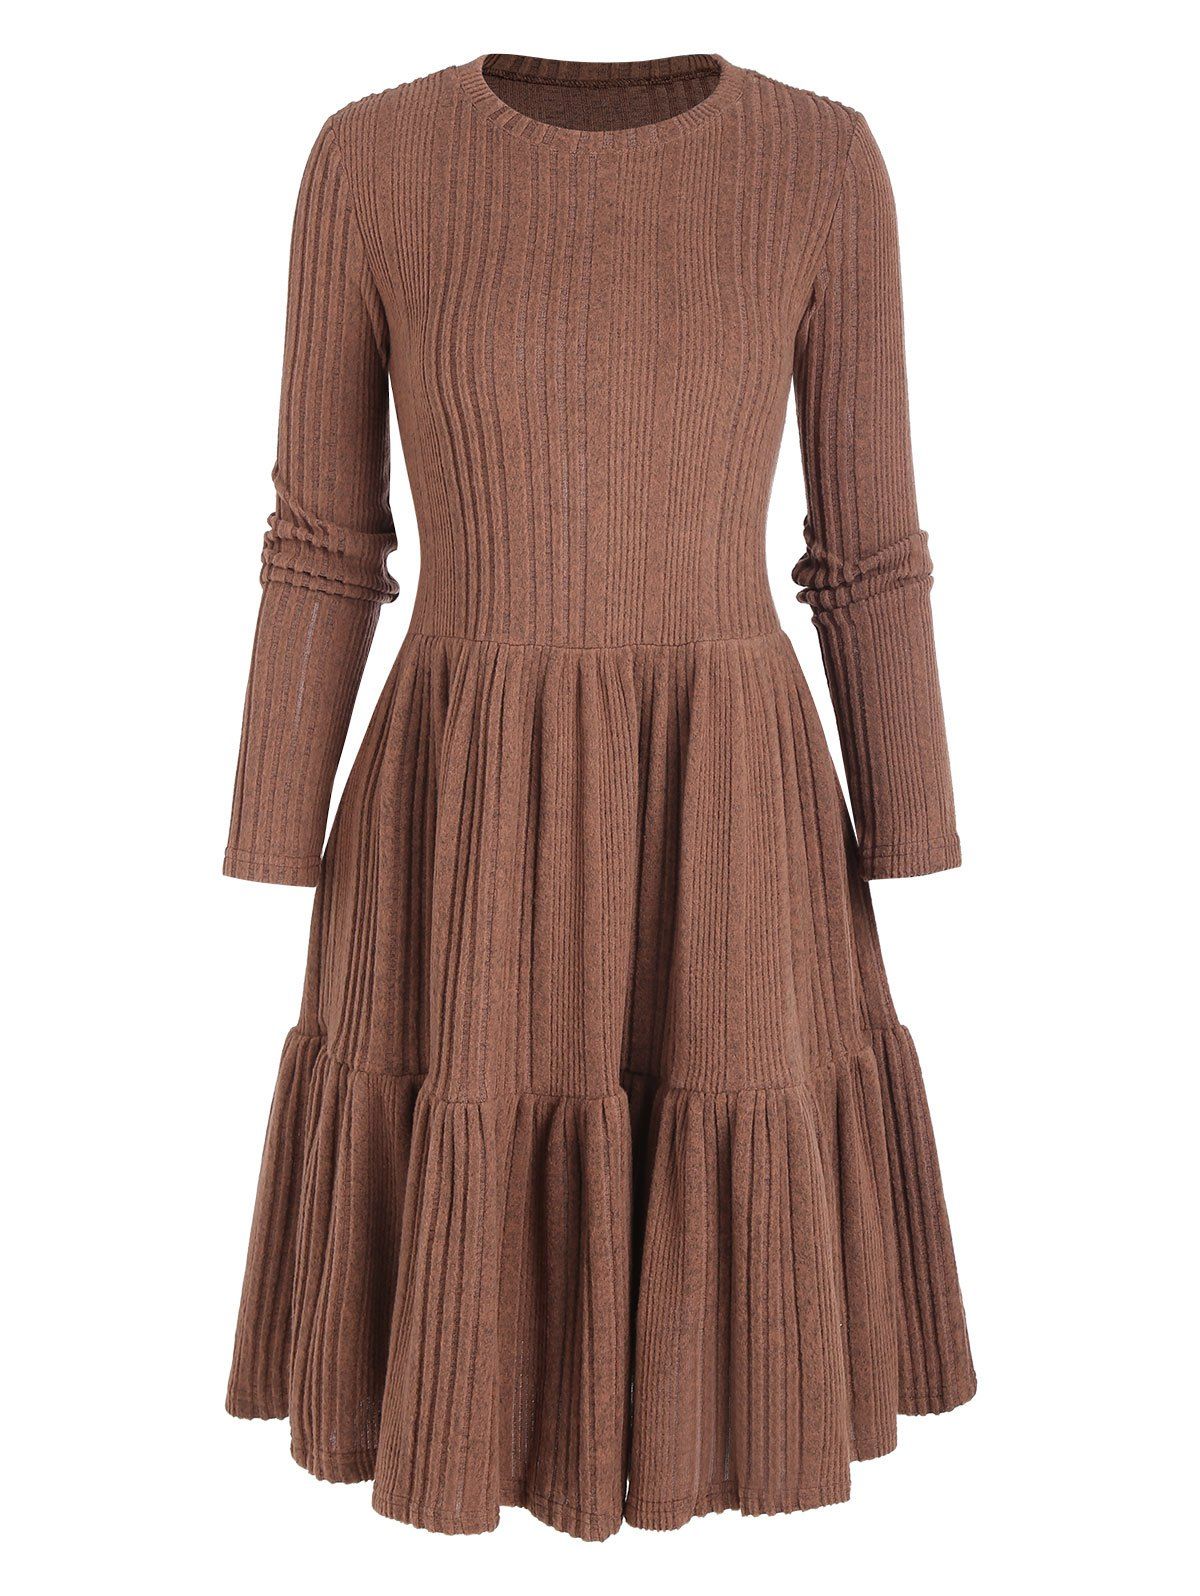 Rib Knit Flounce Mini A Line Dress - COFFEE M